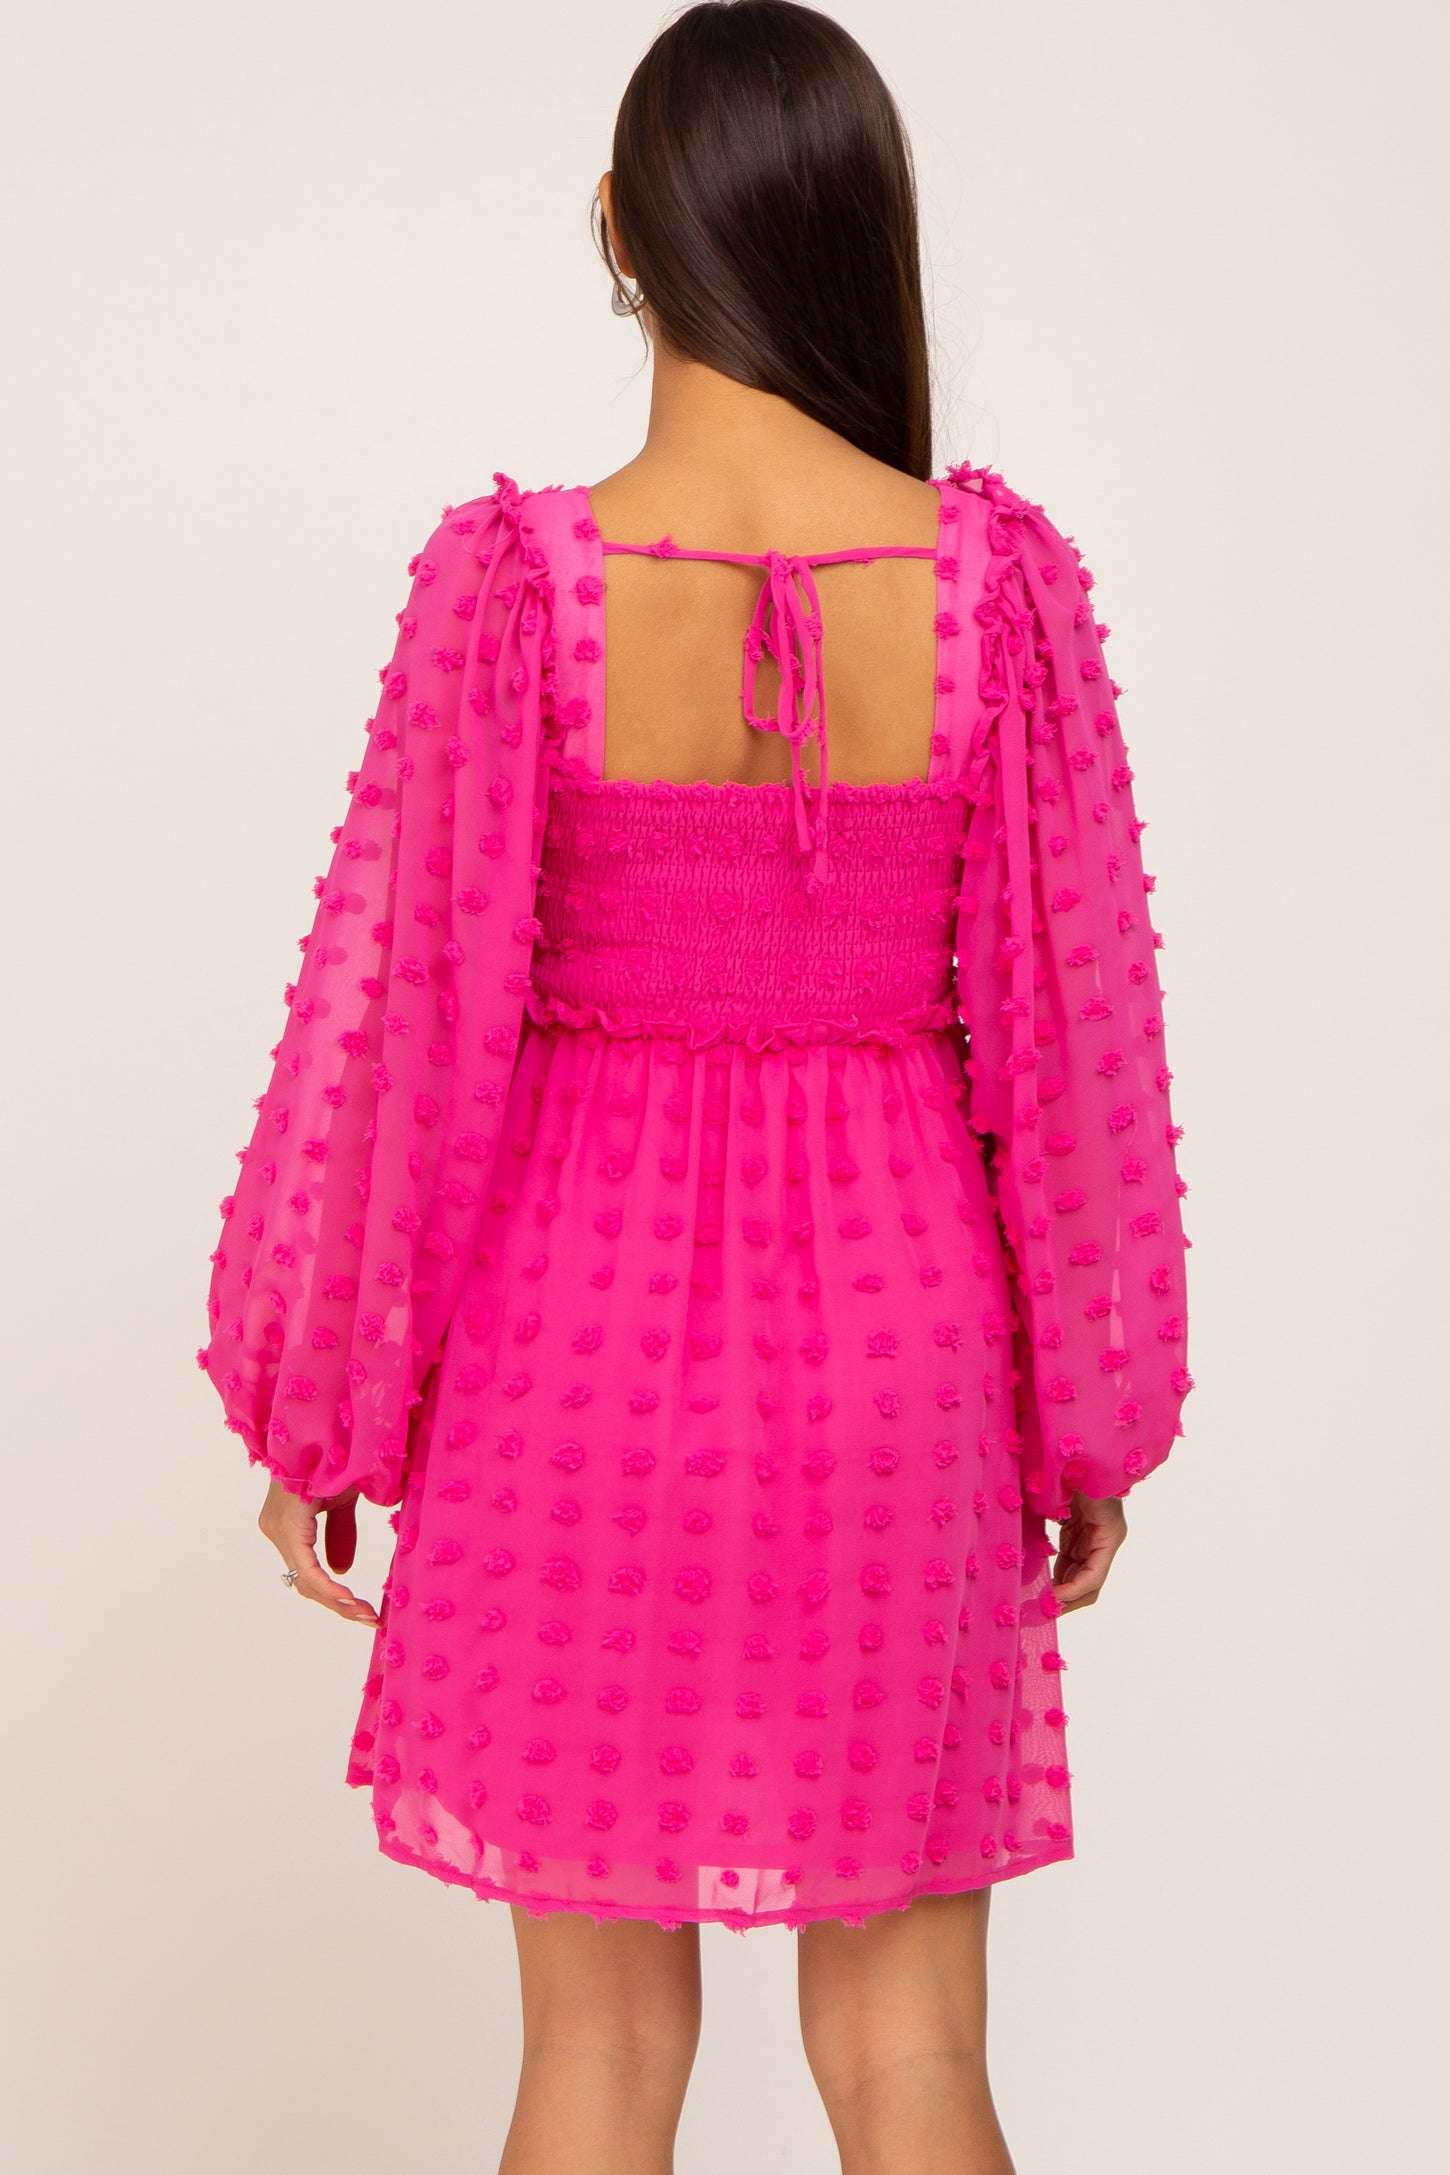 Fuchsia Swiss Dot Smocked Maternity Dress– PinkBlush